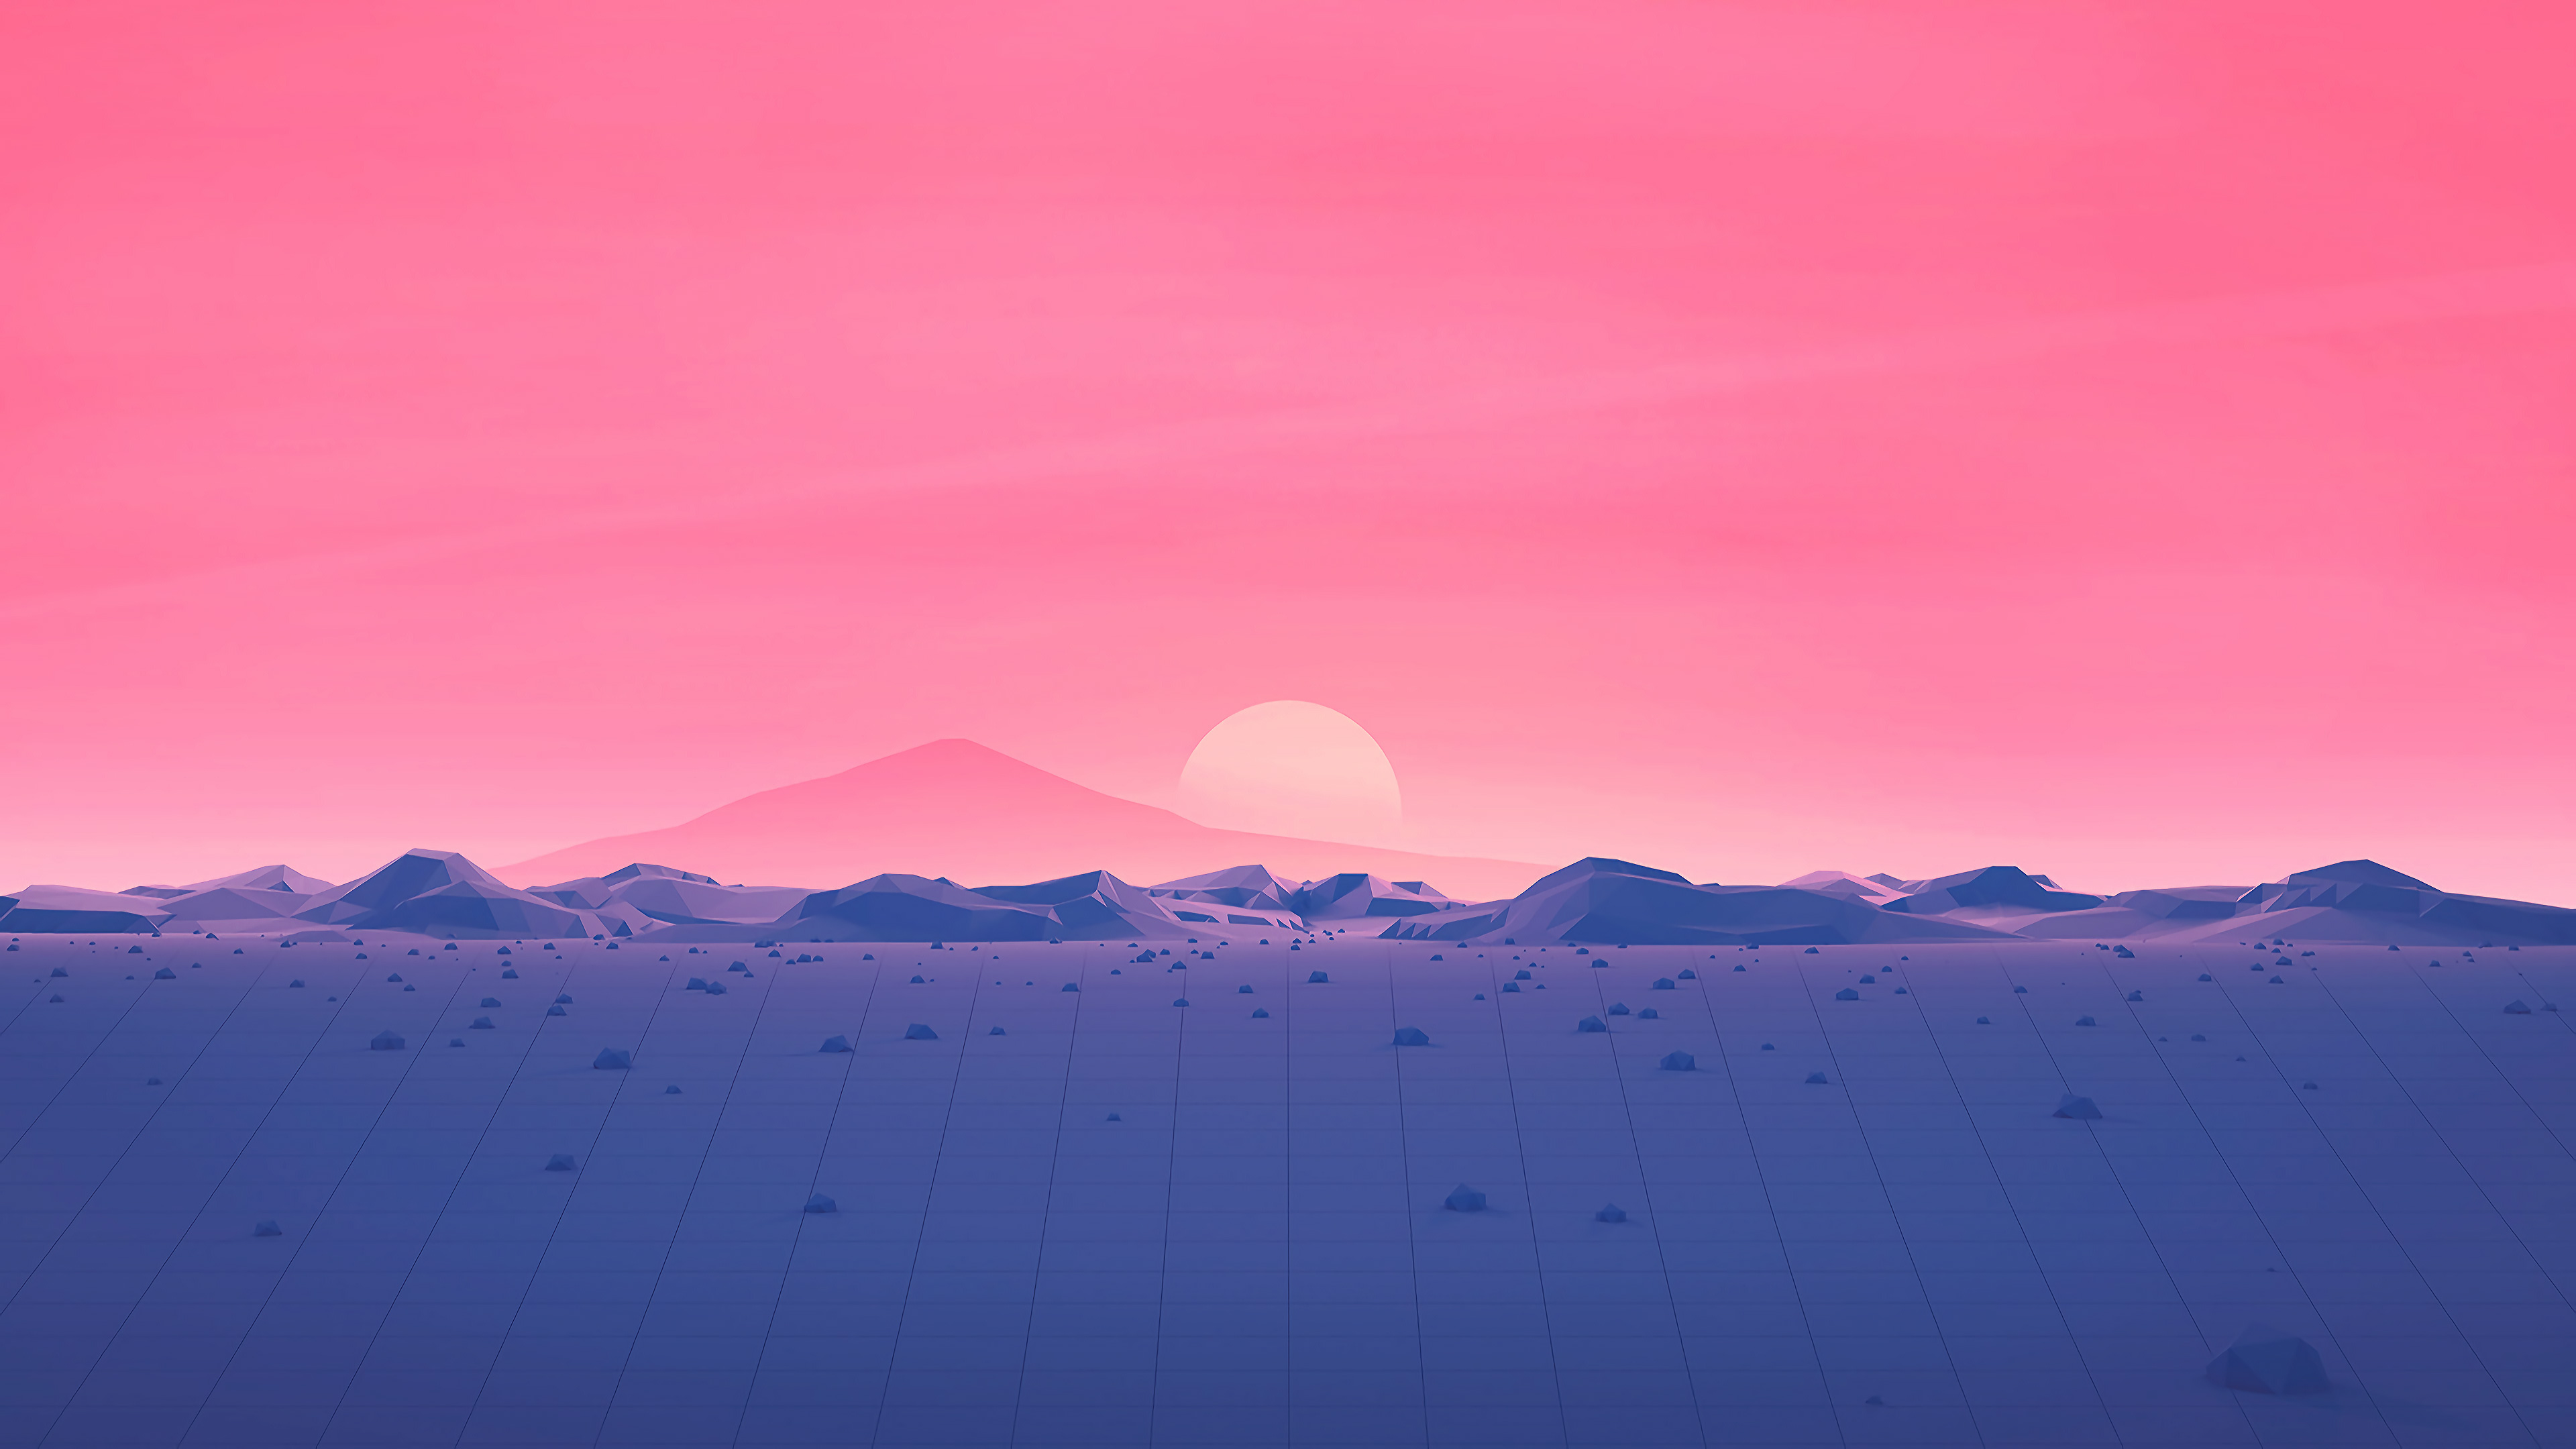 General 3840x2160 digital art artwork minimalism illustration landscape mountains pink